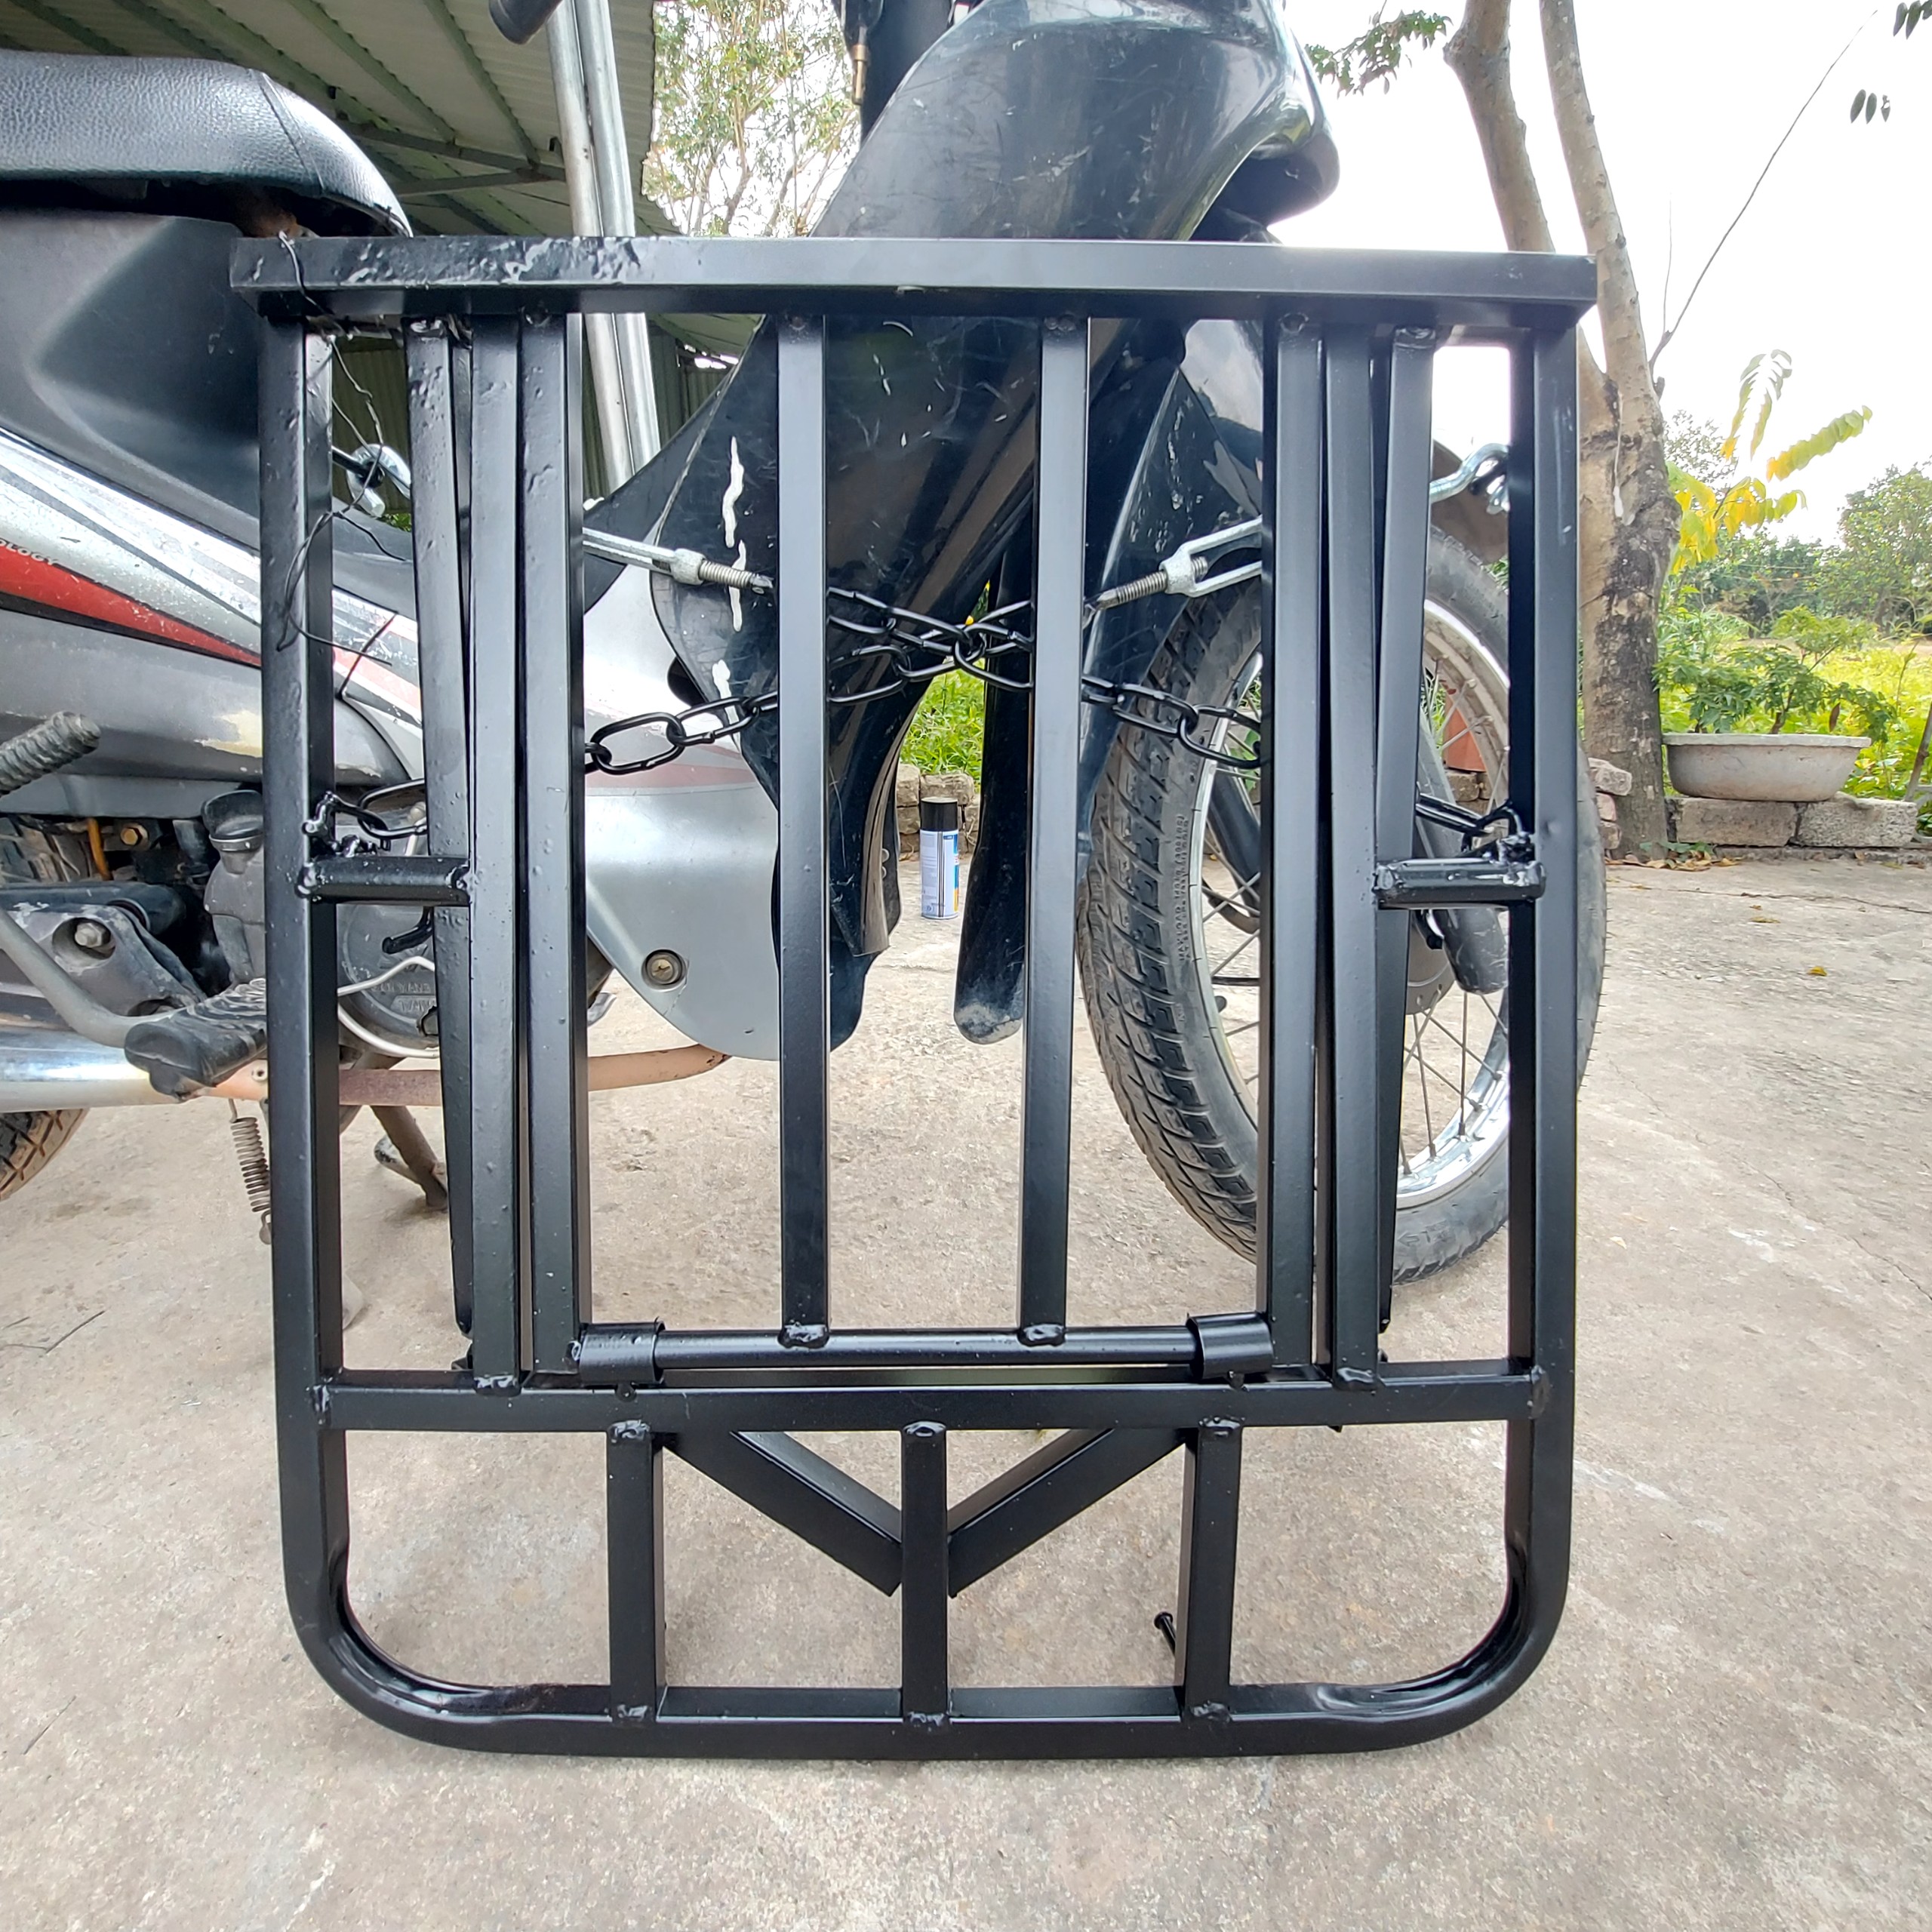 Giá chở hàng xe máy Baga chở hàng xe máy đa năng kệ chở hàng xe máy đa năng có mở cốp